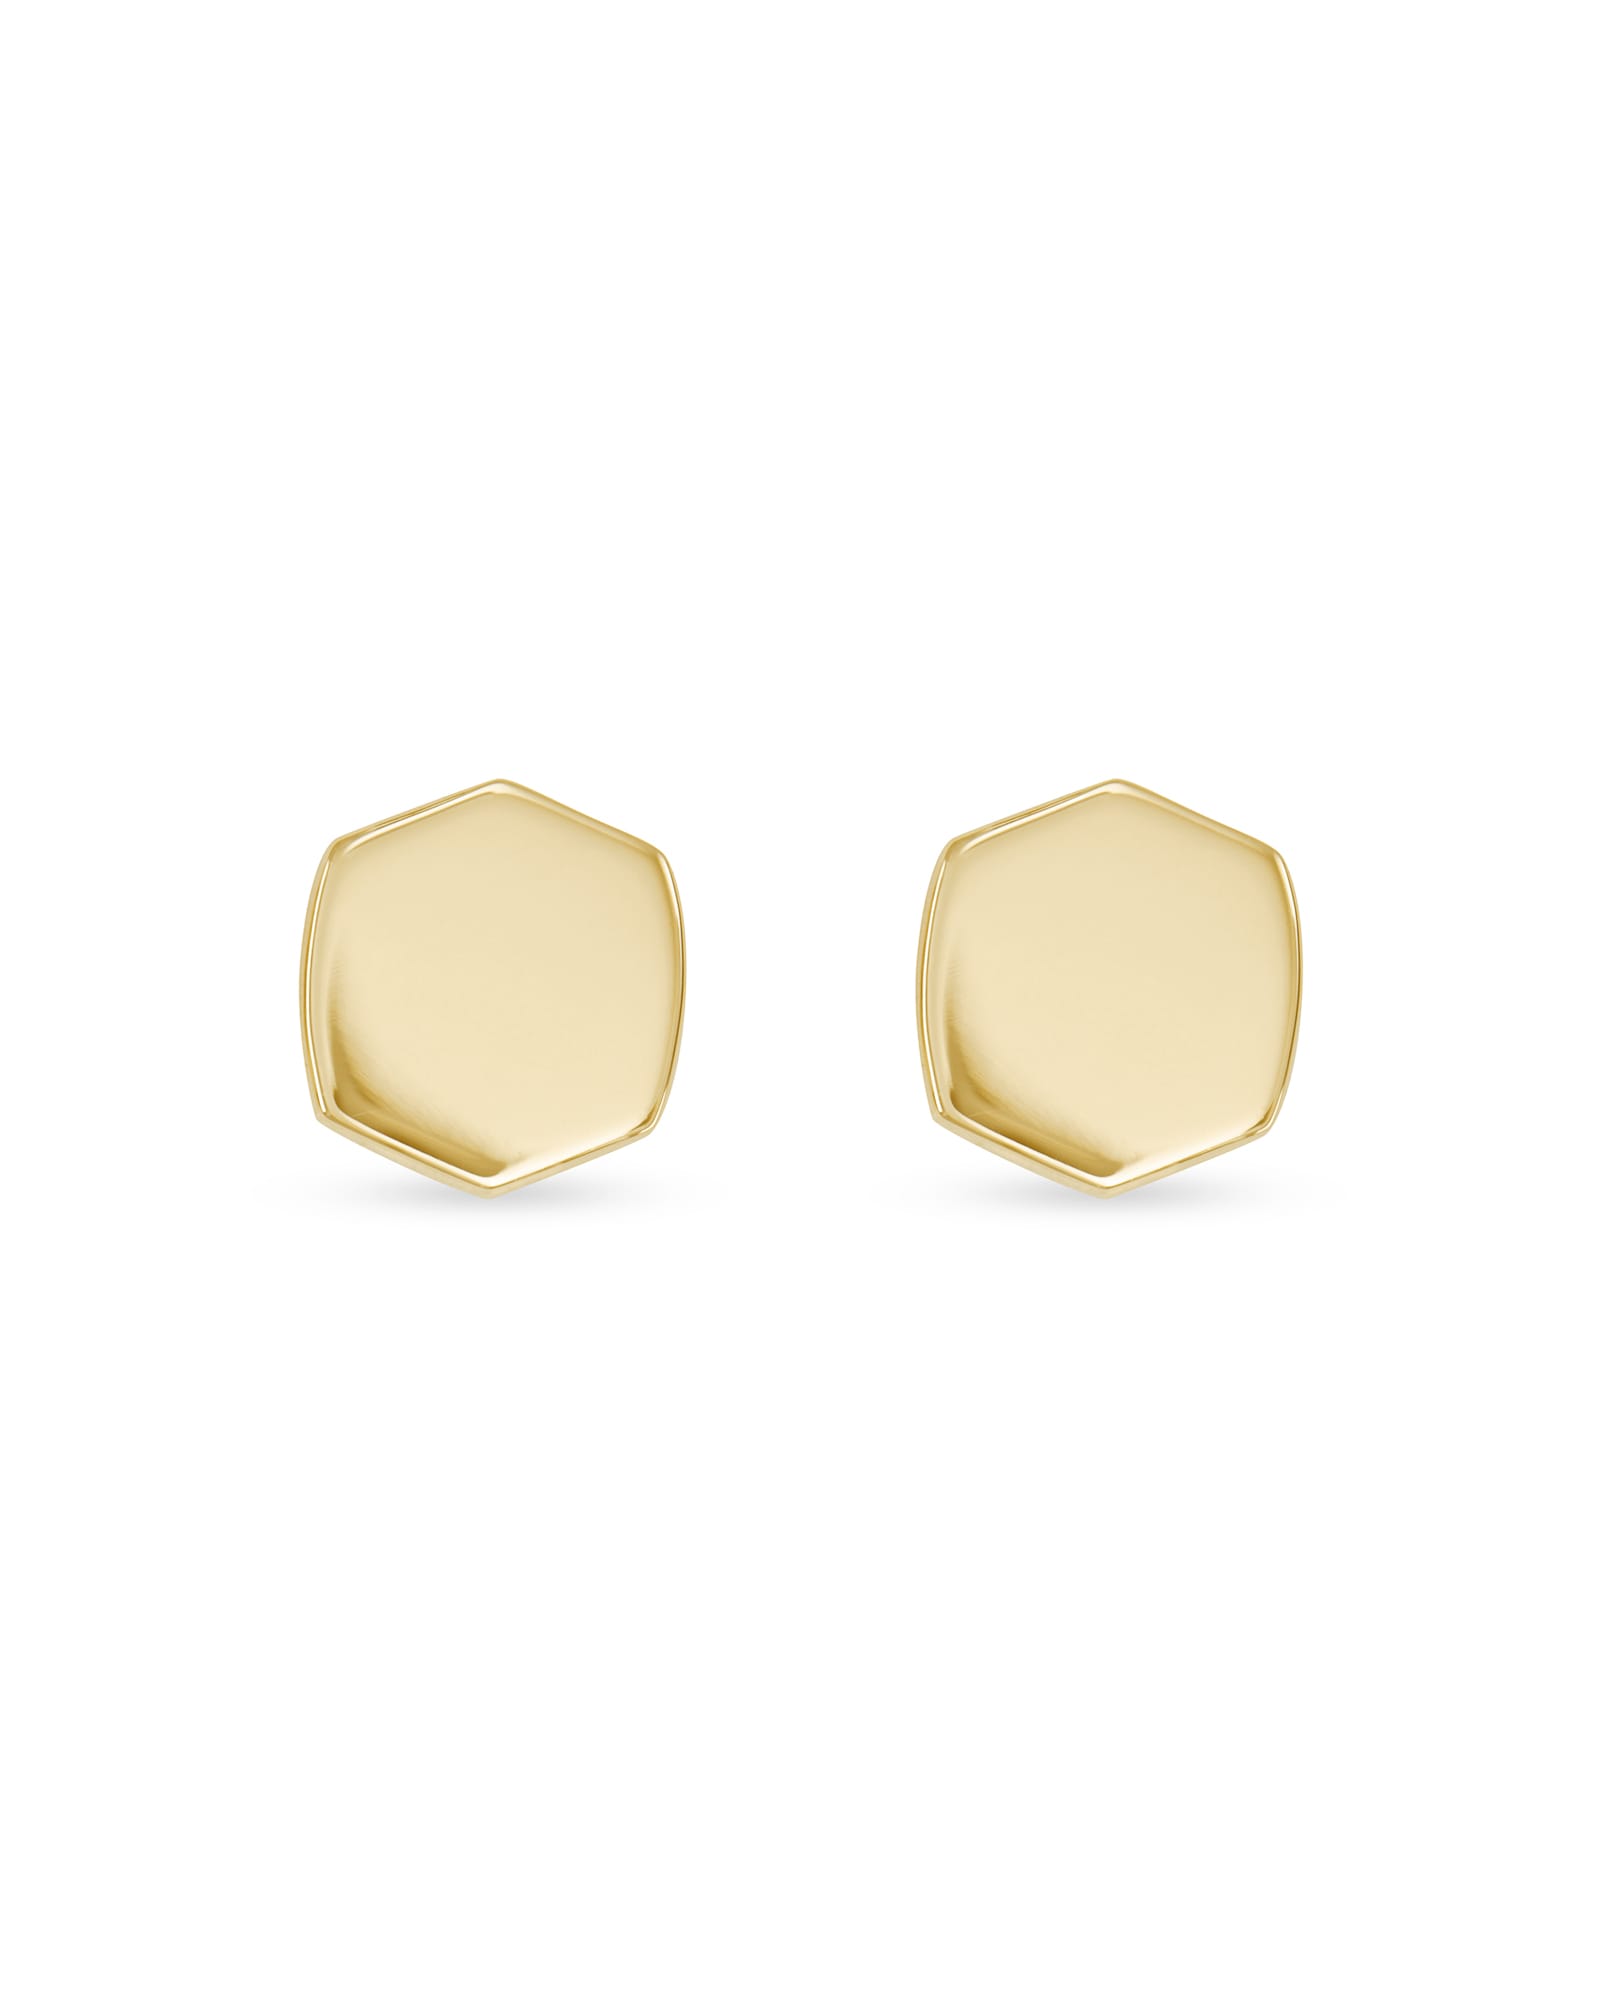 Davis Stud Earrings in 18k Gold Vermeil